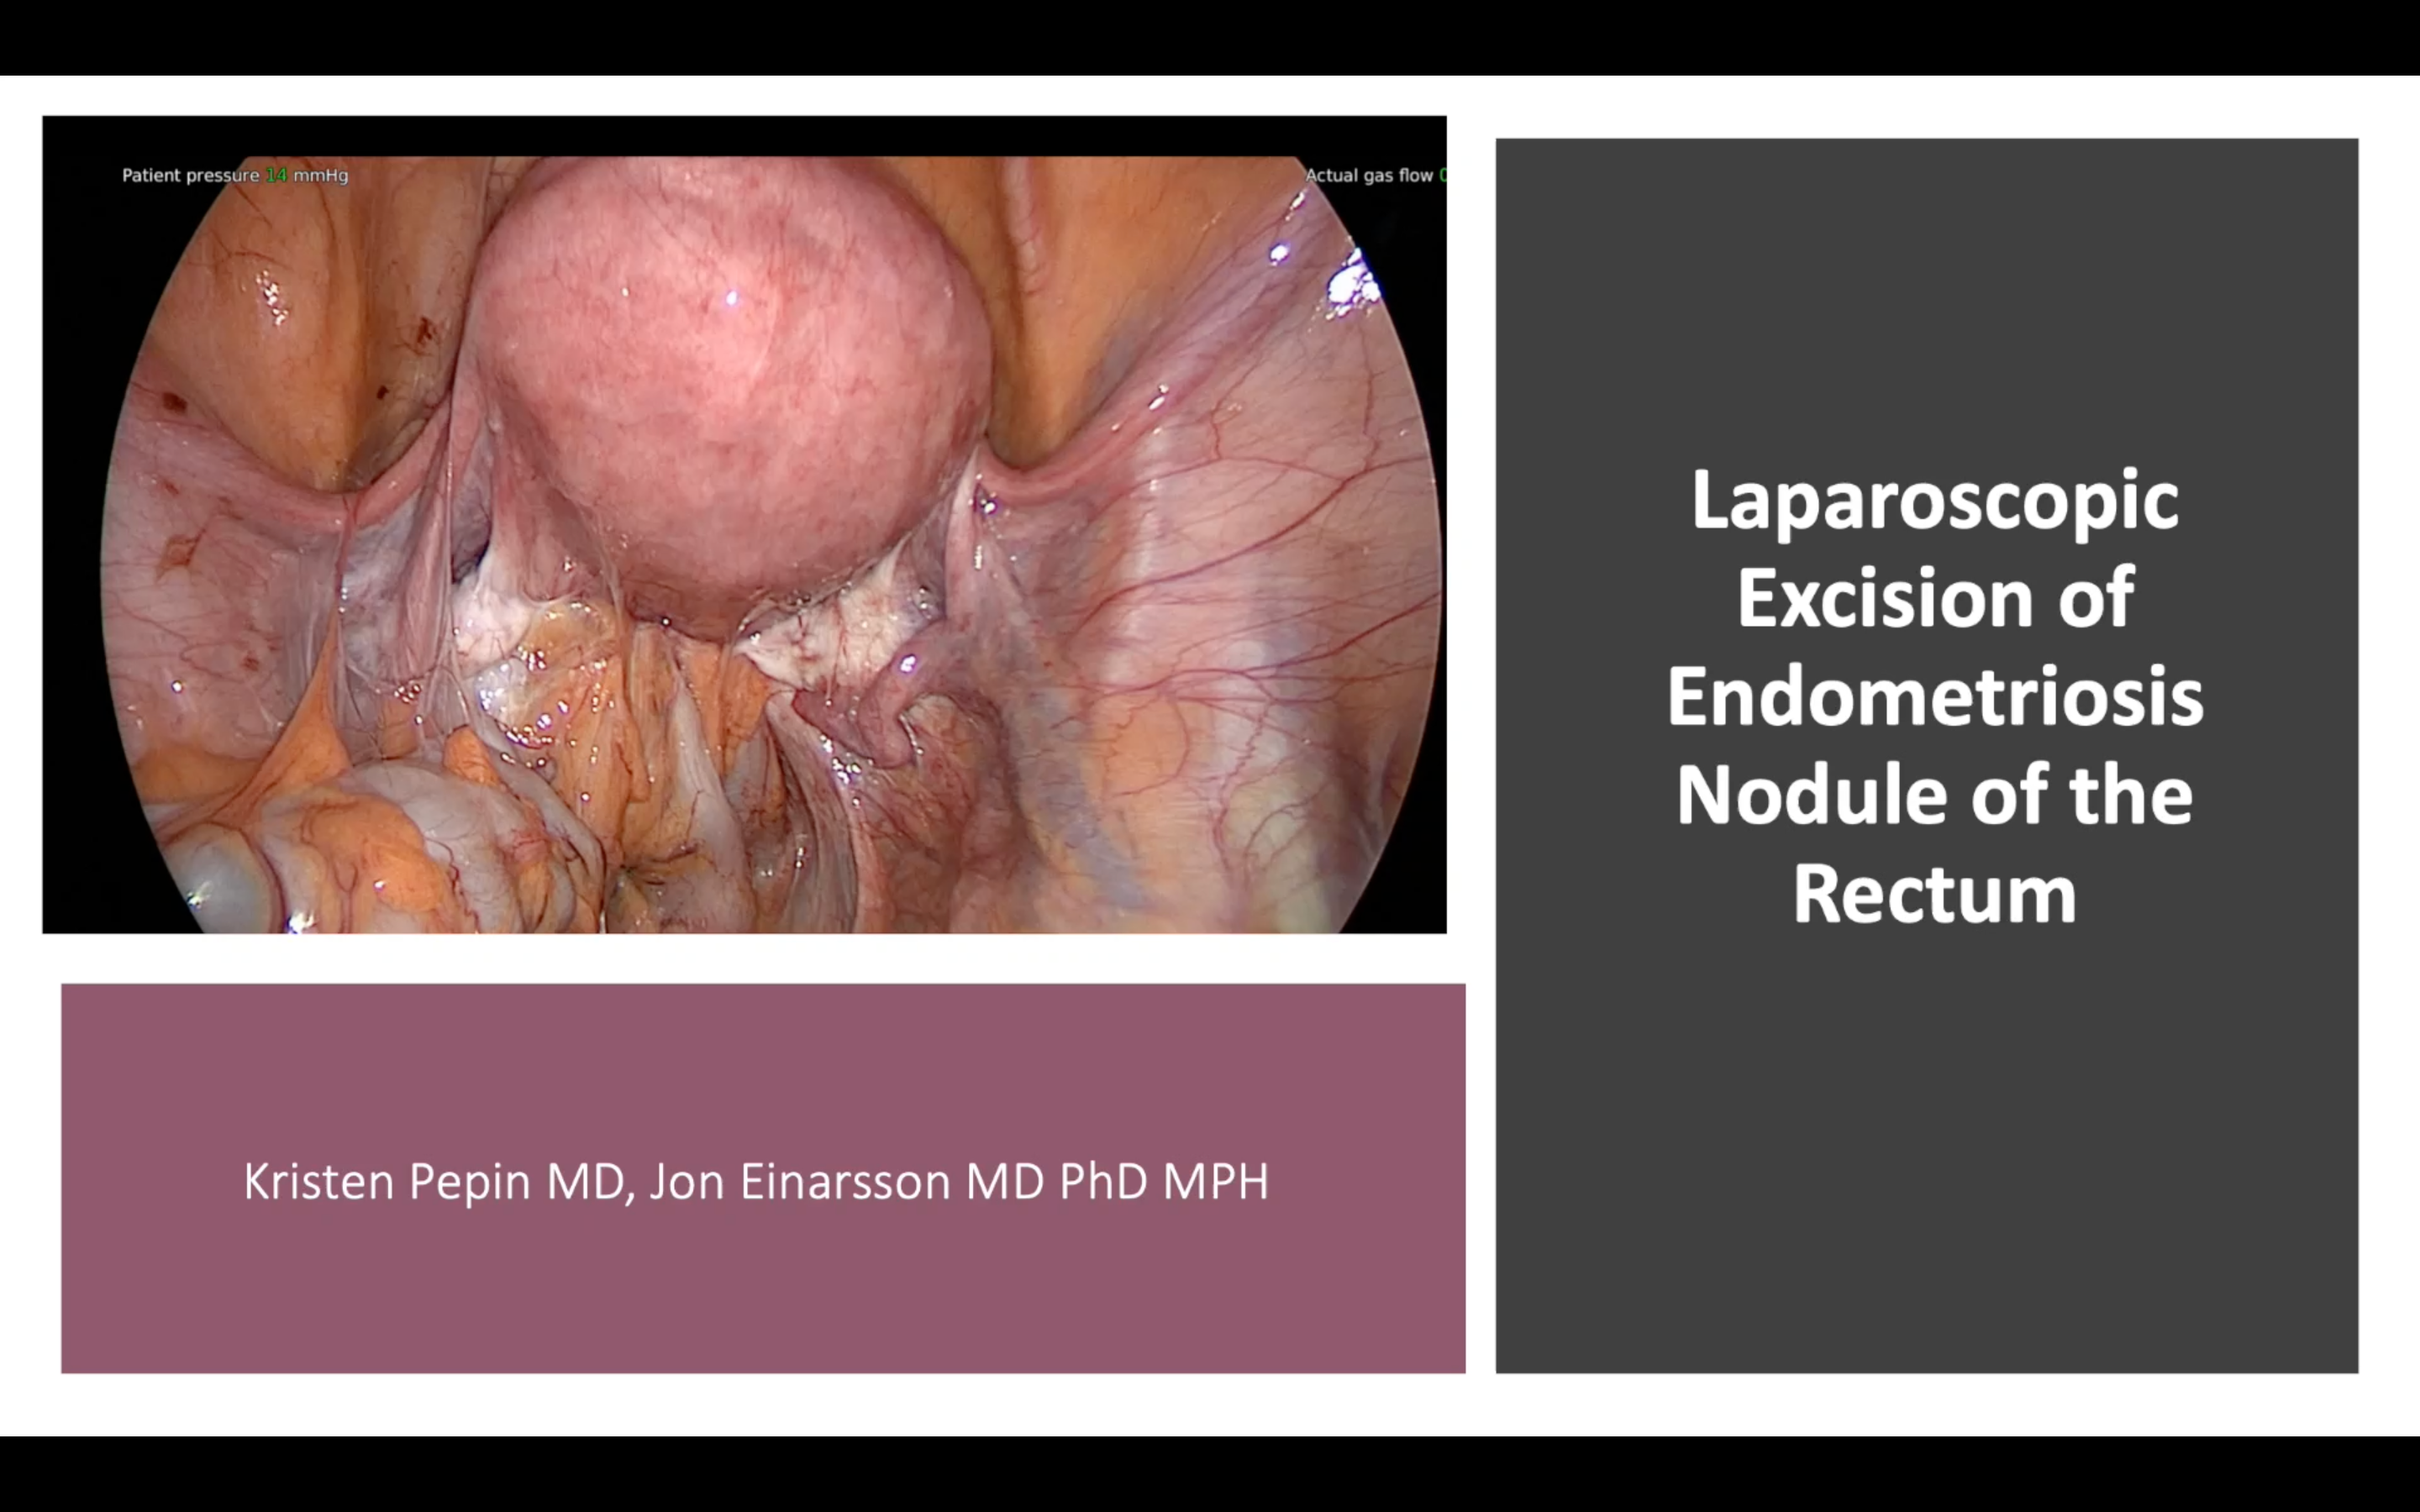 Laparoscopic excision of endometriosis nodule of the rectum